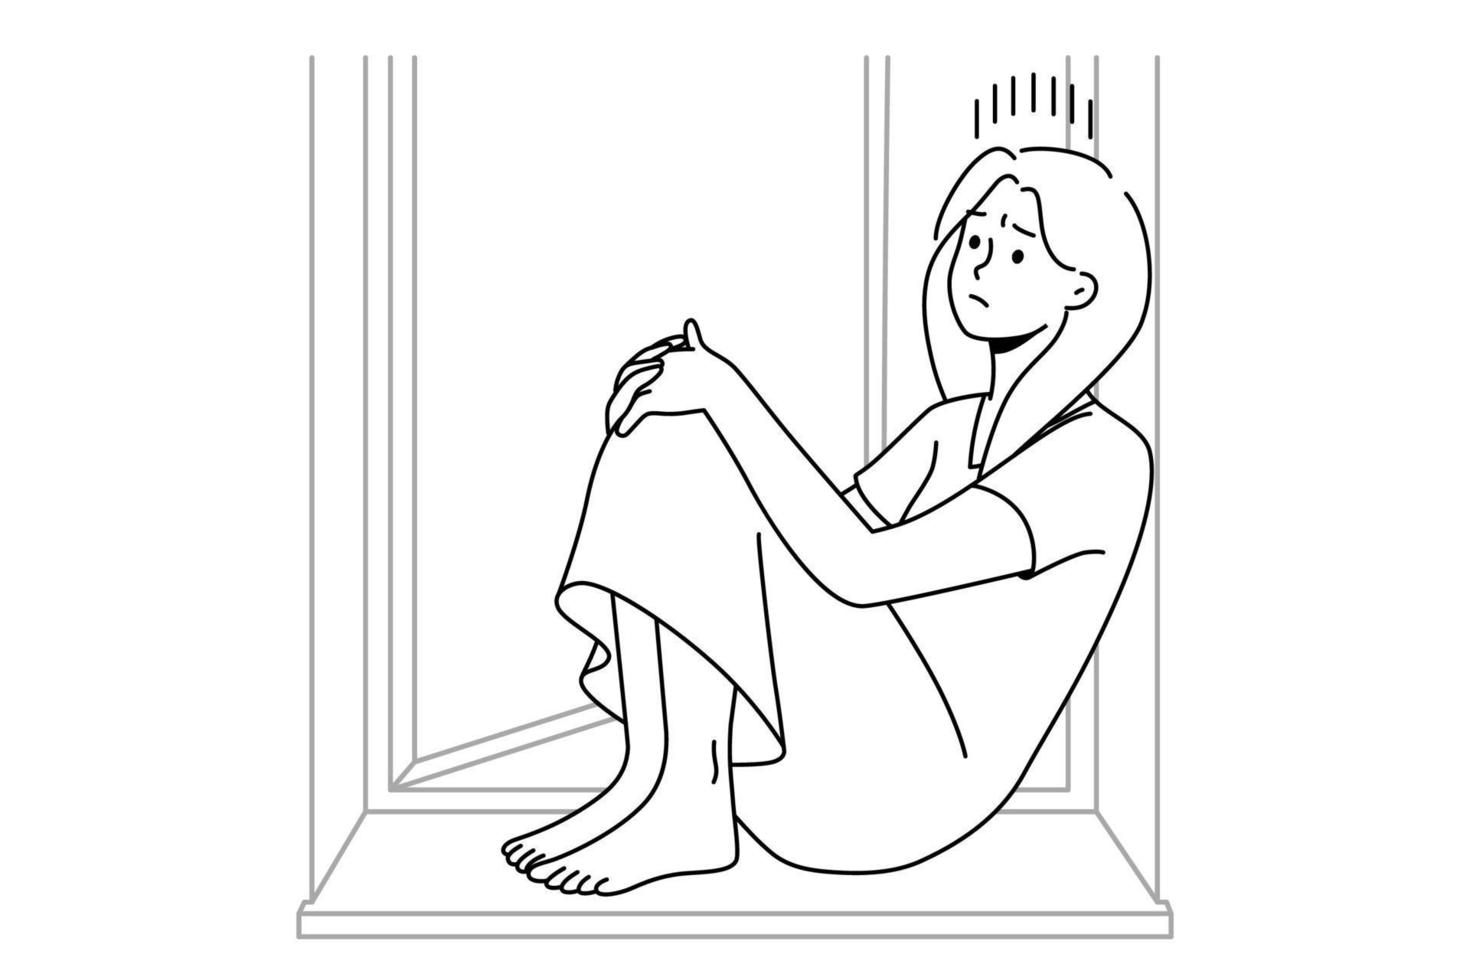 mulher infeliz sente-se no parapeito da janela sofre de solidão ou solidão. menina triste chateada luta com depressão ou problemas psicológicos mentais. ilustração vetorial. vetor